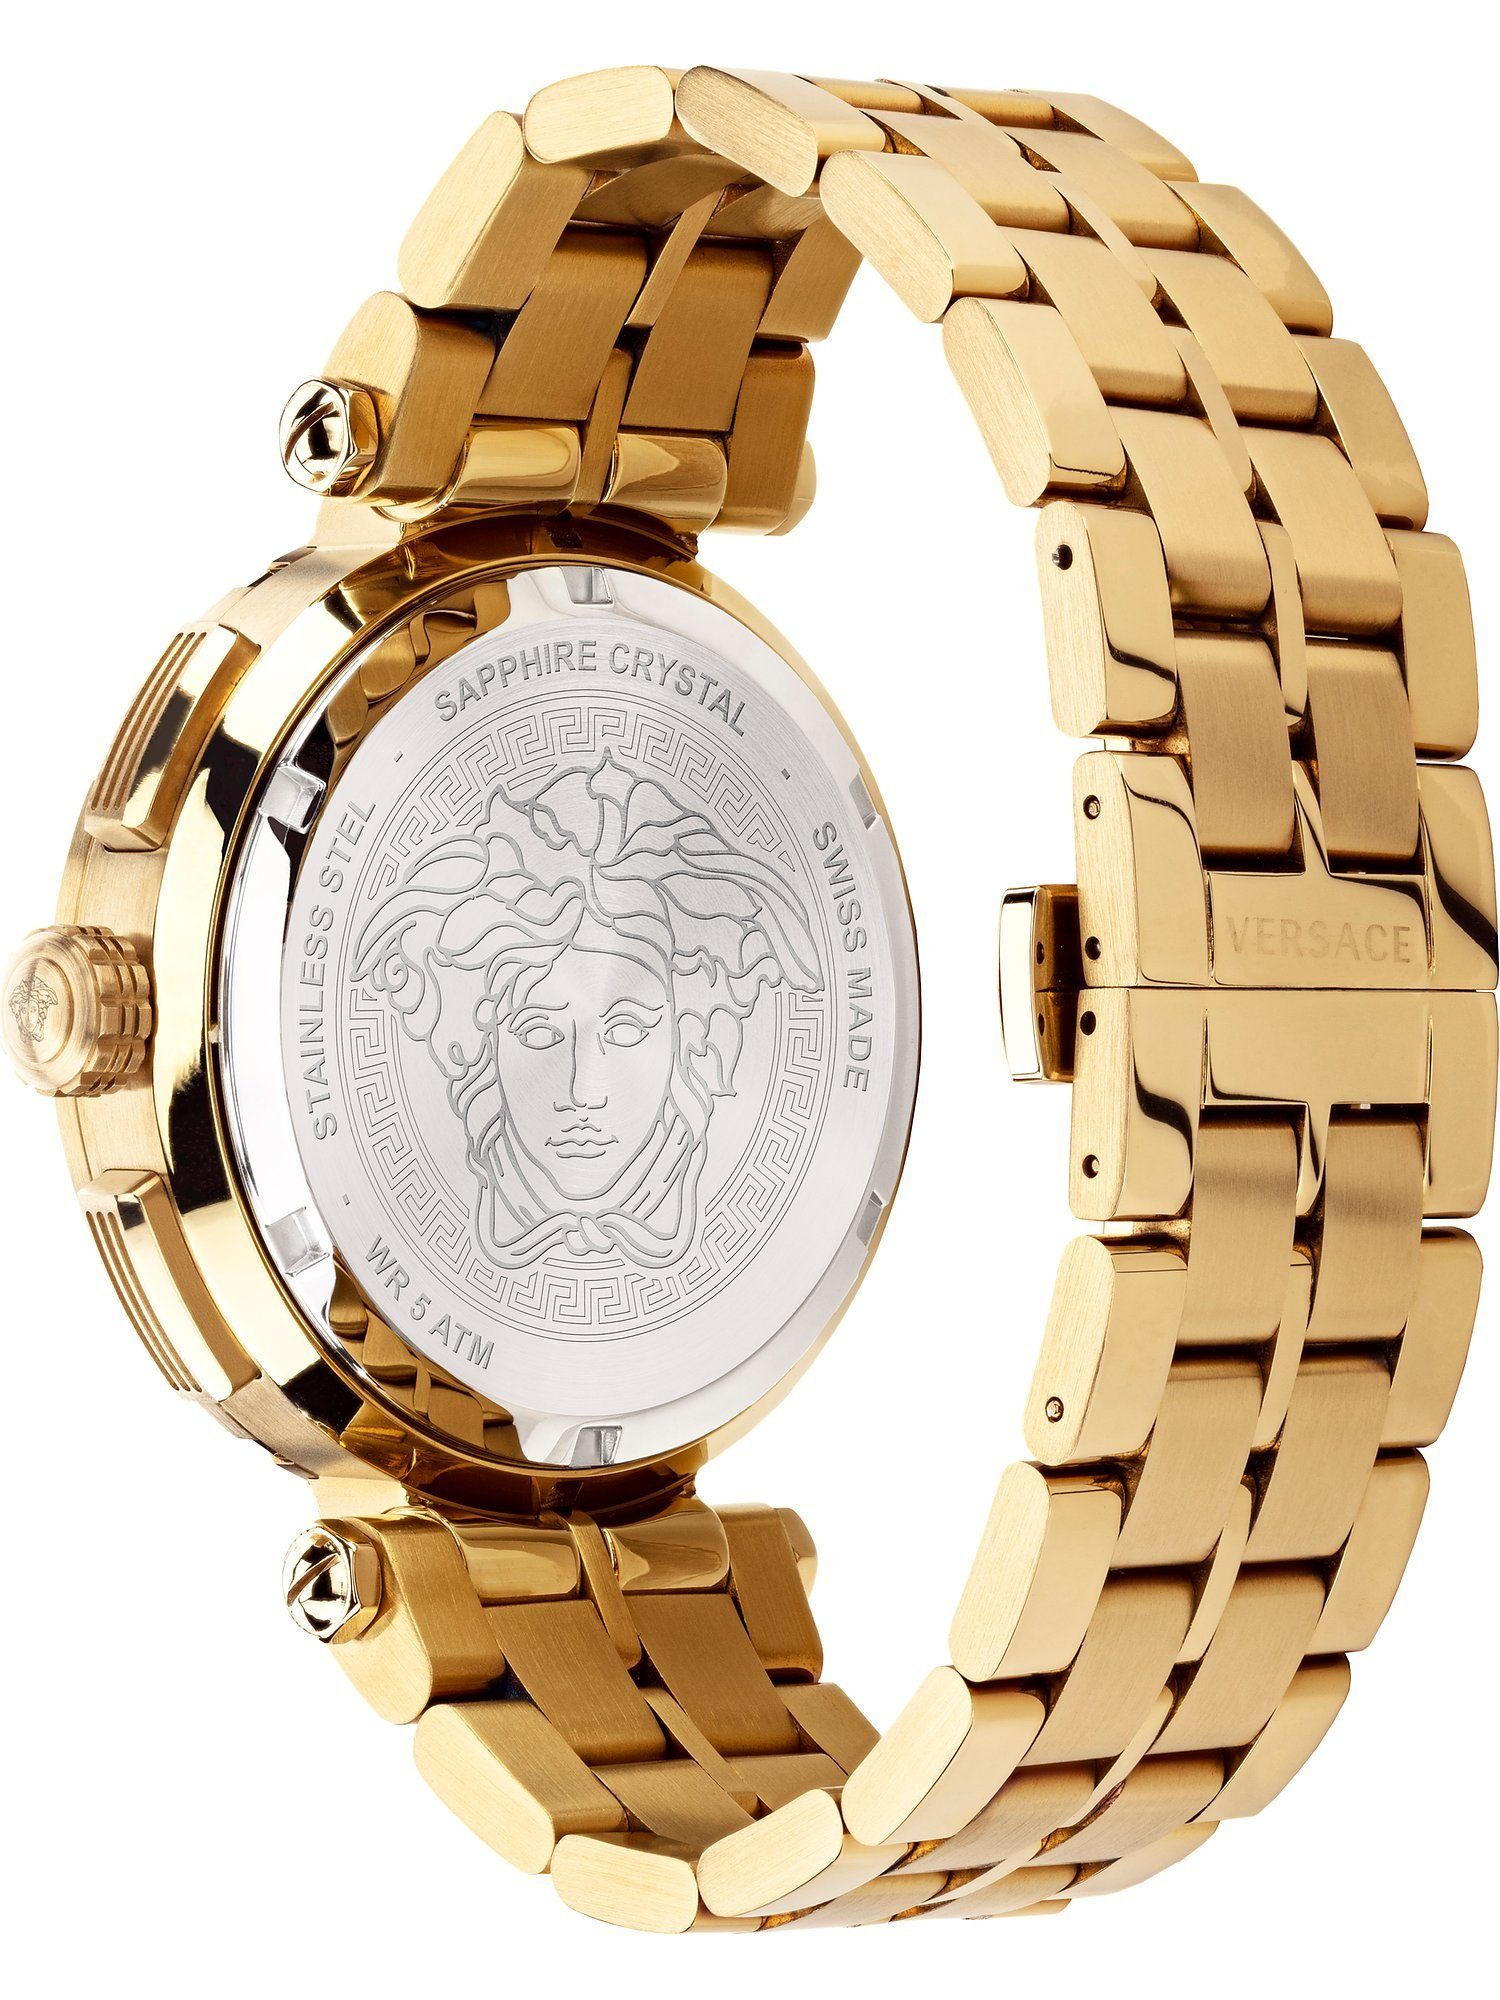 Herren-Uhren Versace Quarz, Analog Klassikuhr Quarzuhr gold Versace